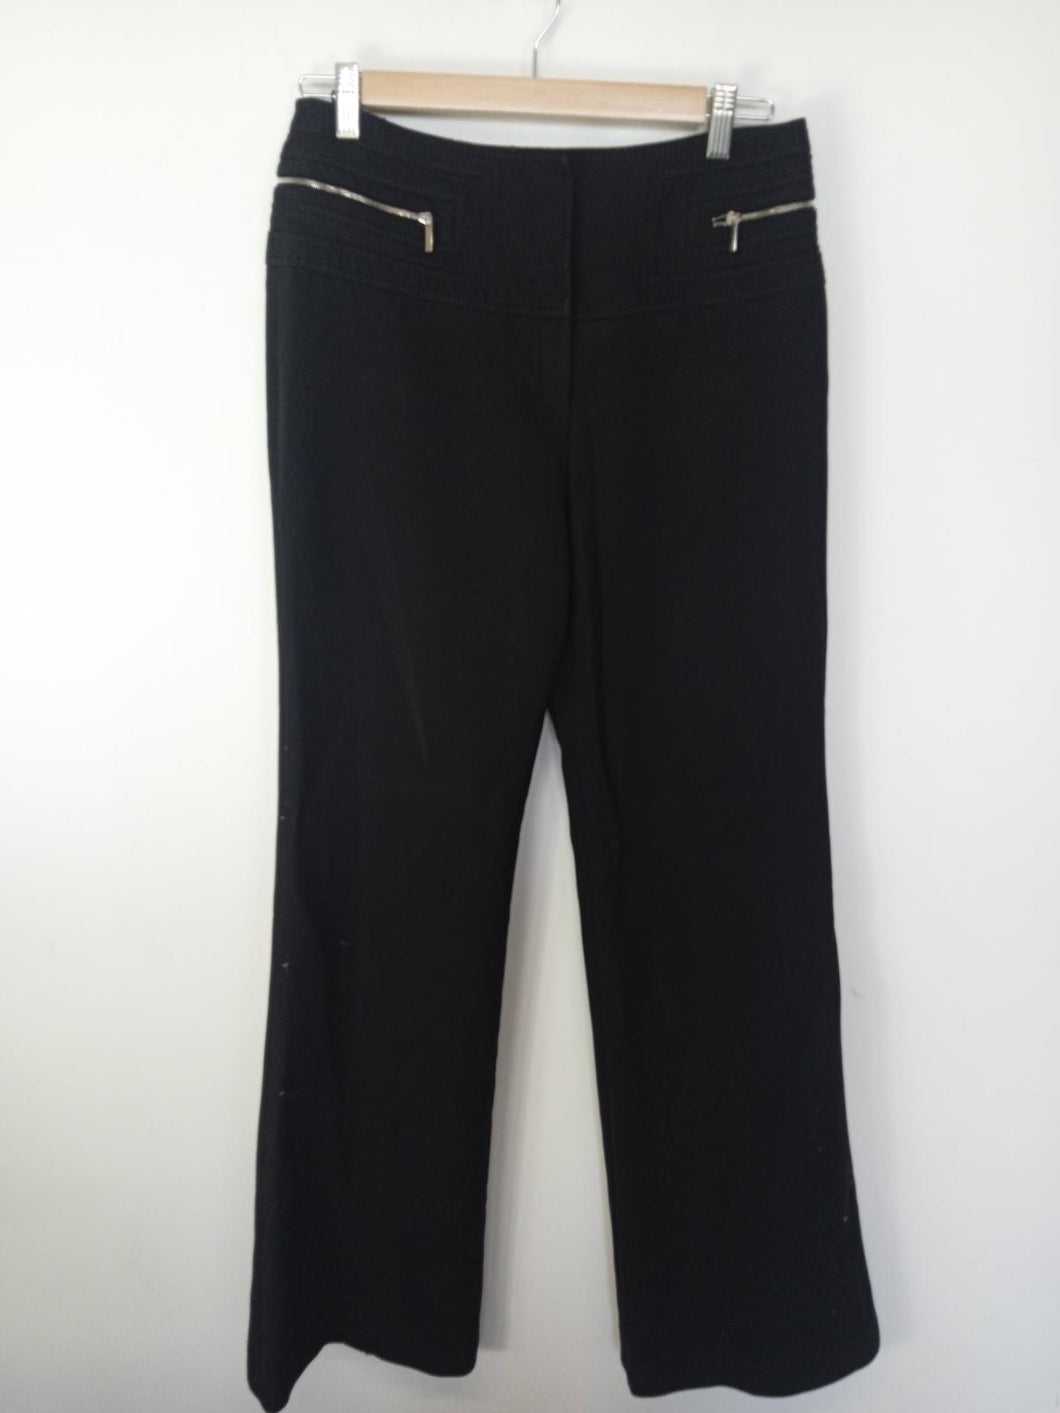 KAREN MILLEN Ladies Black Zip Fly Wide Leg Trousers Size UK12